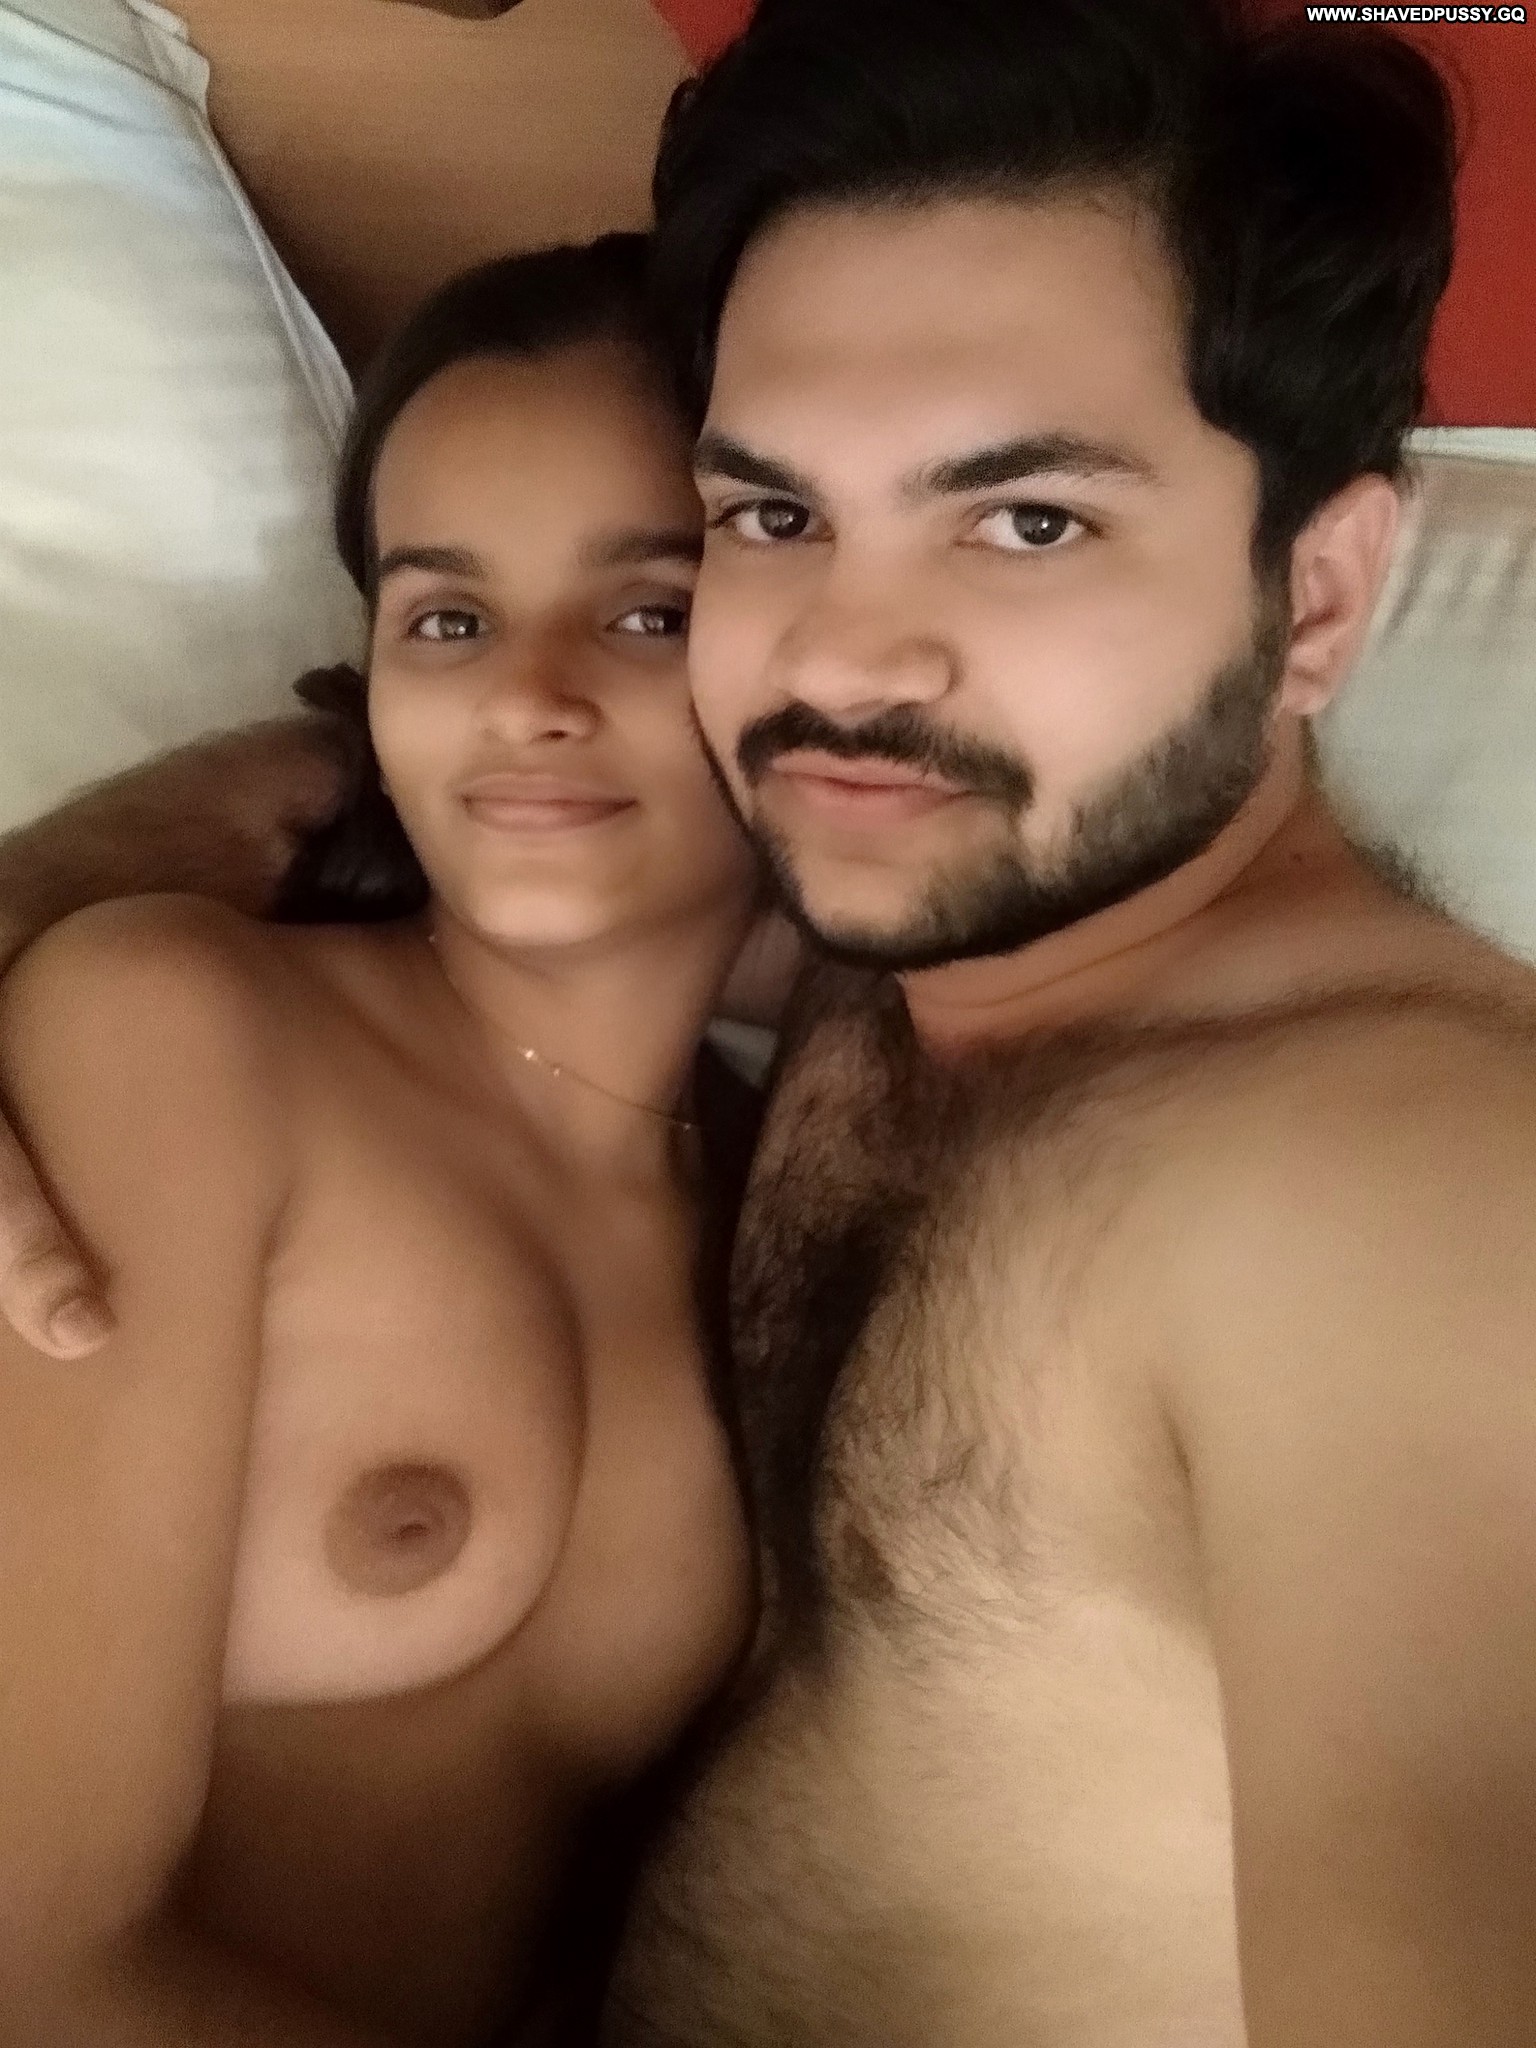 girlfriend stolen nude videos Sex Pics Hd